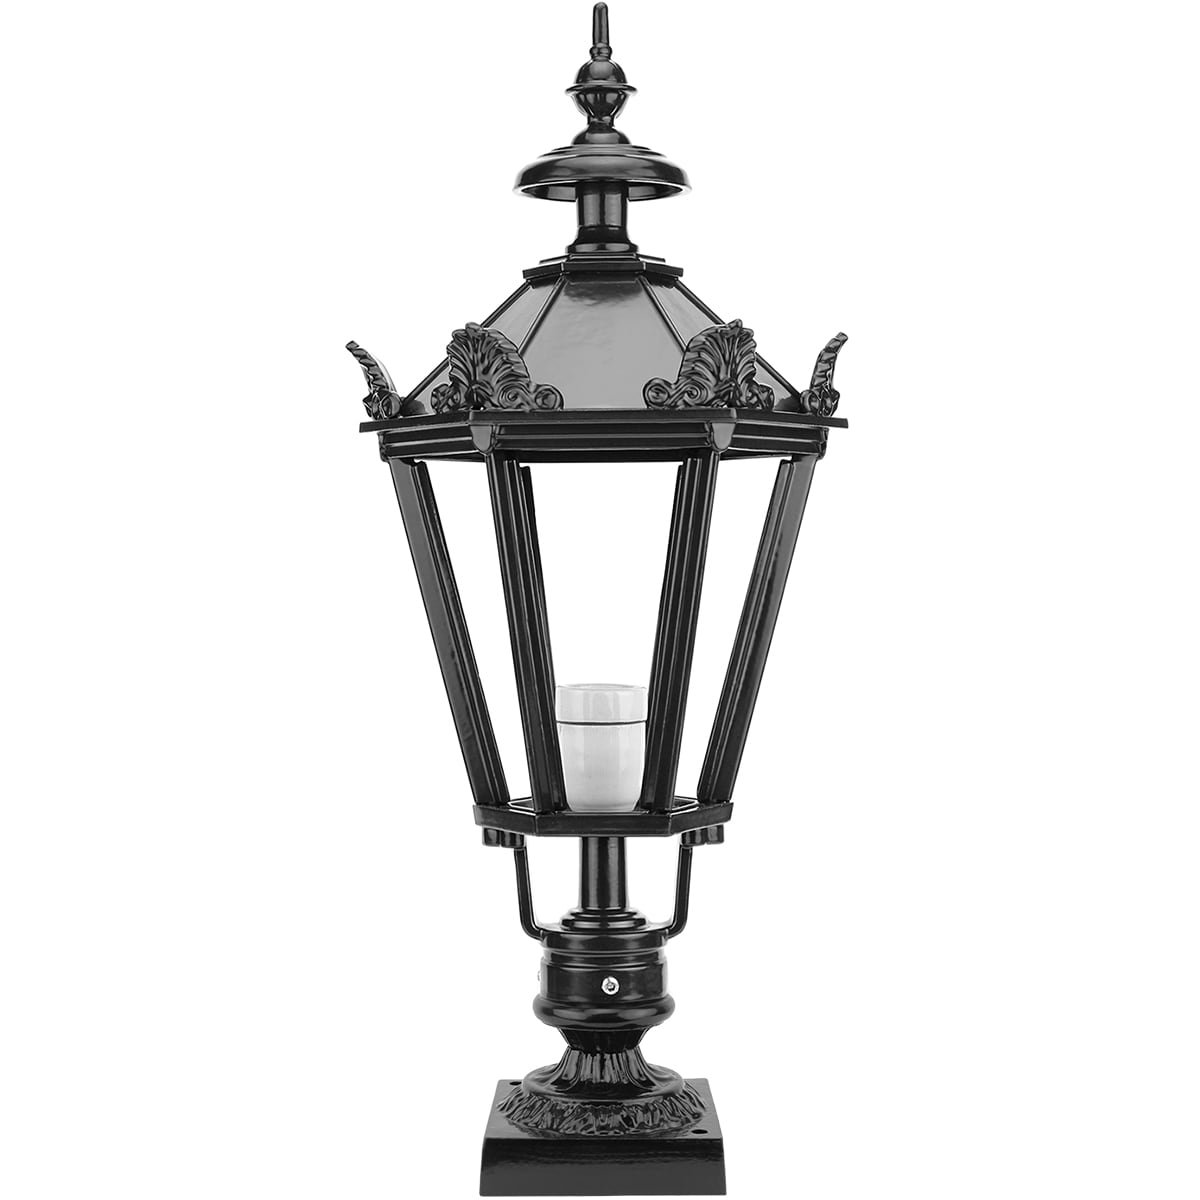 Buitenverlichting Klassiek Landelijk Buitenlamp Nijkerk met kronen - 73 cm